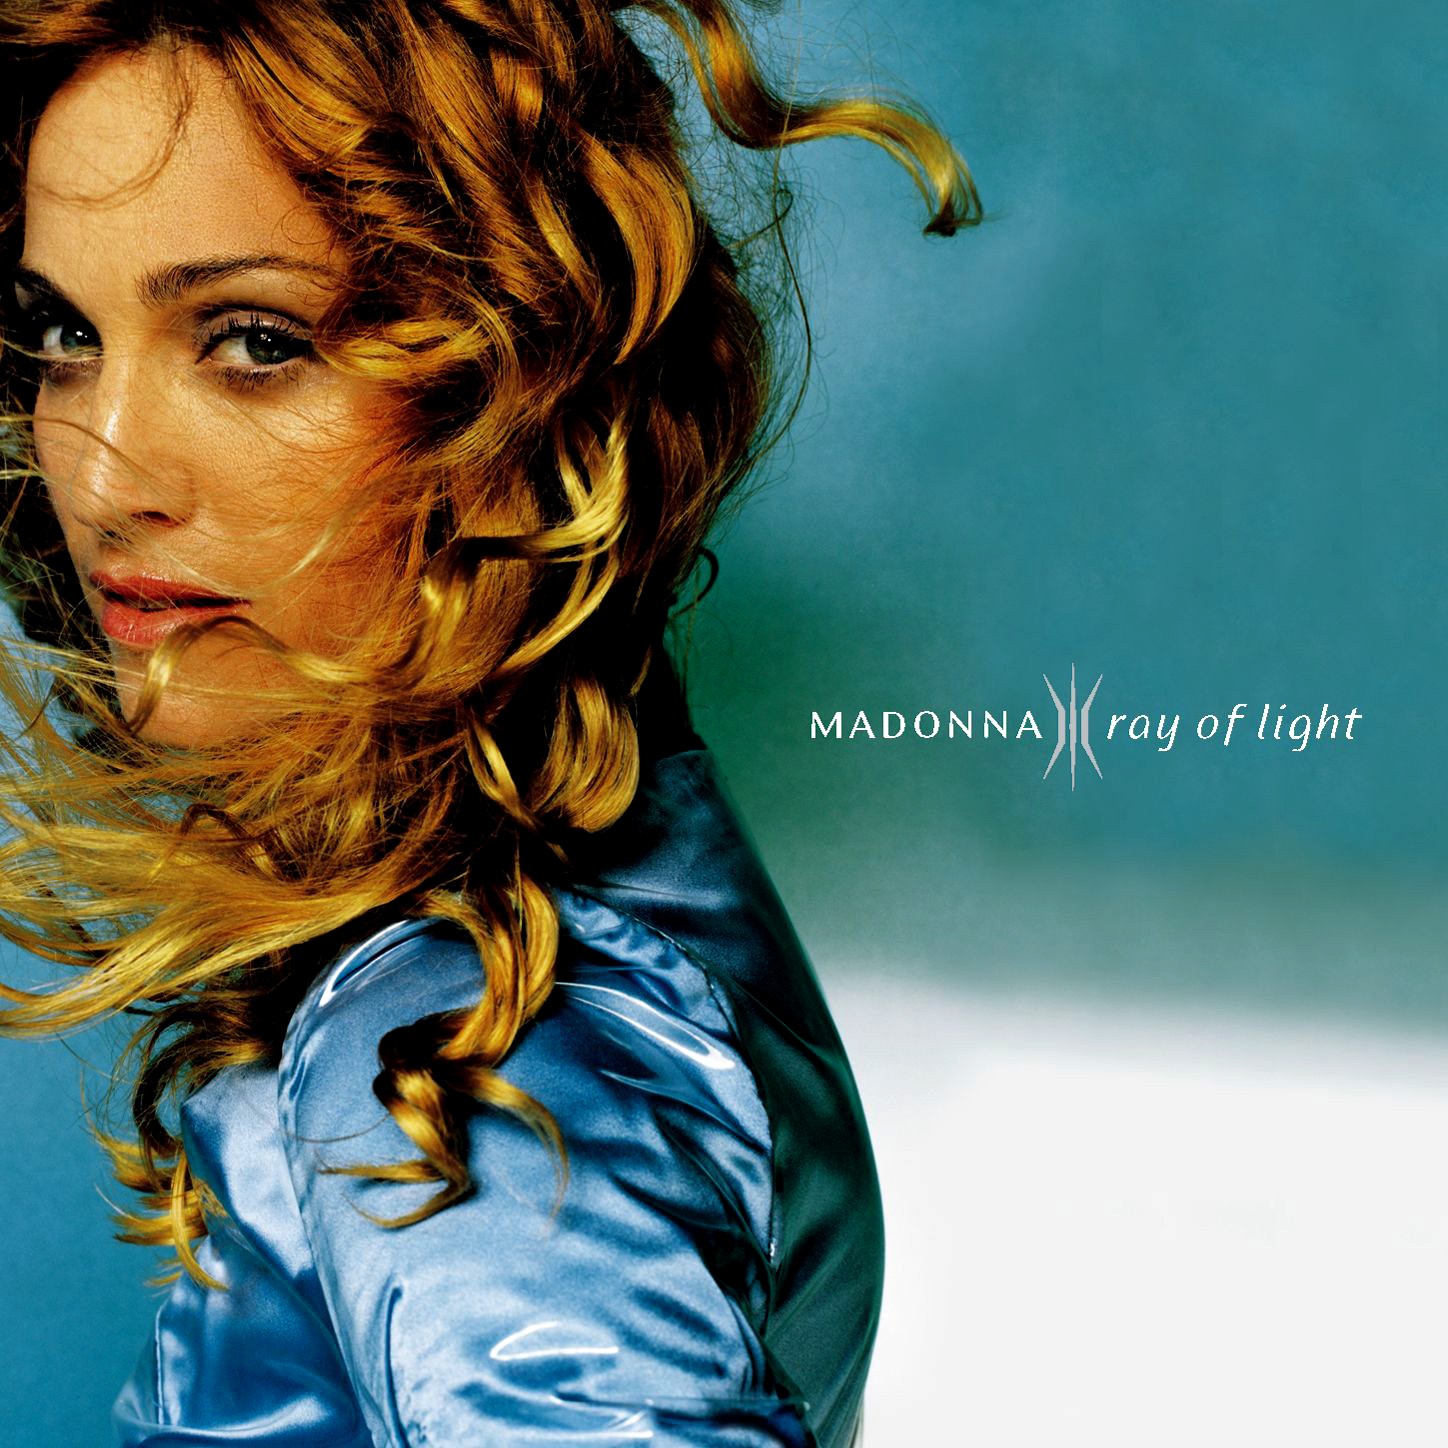 http://1.bp.blogspot.com/_f2iAGRf_Ioo/TIaqaPxYLSI/AAAAAAAABUc/OCoLJdnfVvU/s1600/Madonna+-+Ray+of+Light+%5BFront%5D.jpg